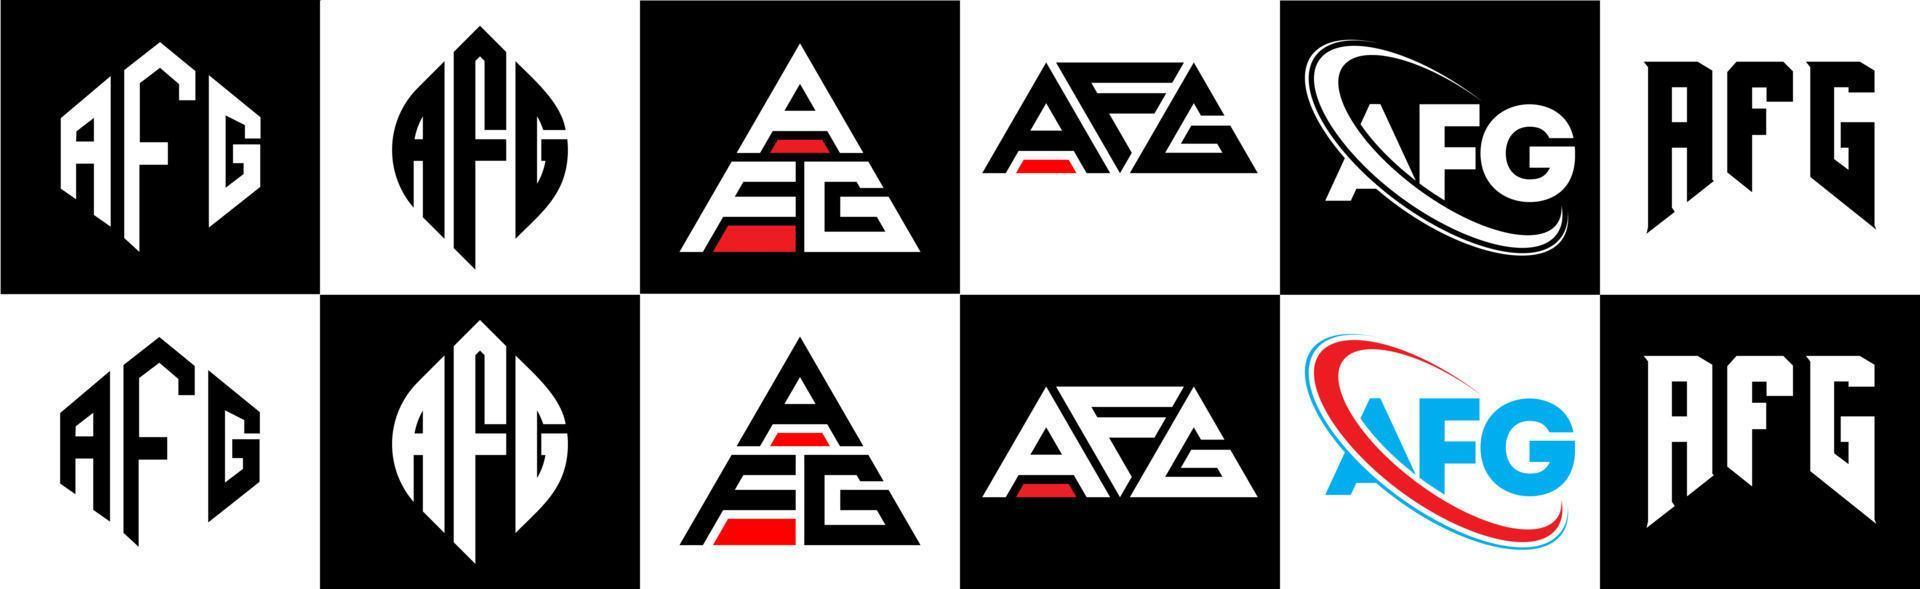 afg-Buchstaben-Logo-Design in sechs Stilen. afg polygon, kreis, dreieck, hexagon, flacher und einfacher stil mit schwarz-weißem farbvariationsbuchstabenlogo auf einer zeichenfläche. afg minimalistisches und klassisches logo vektor